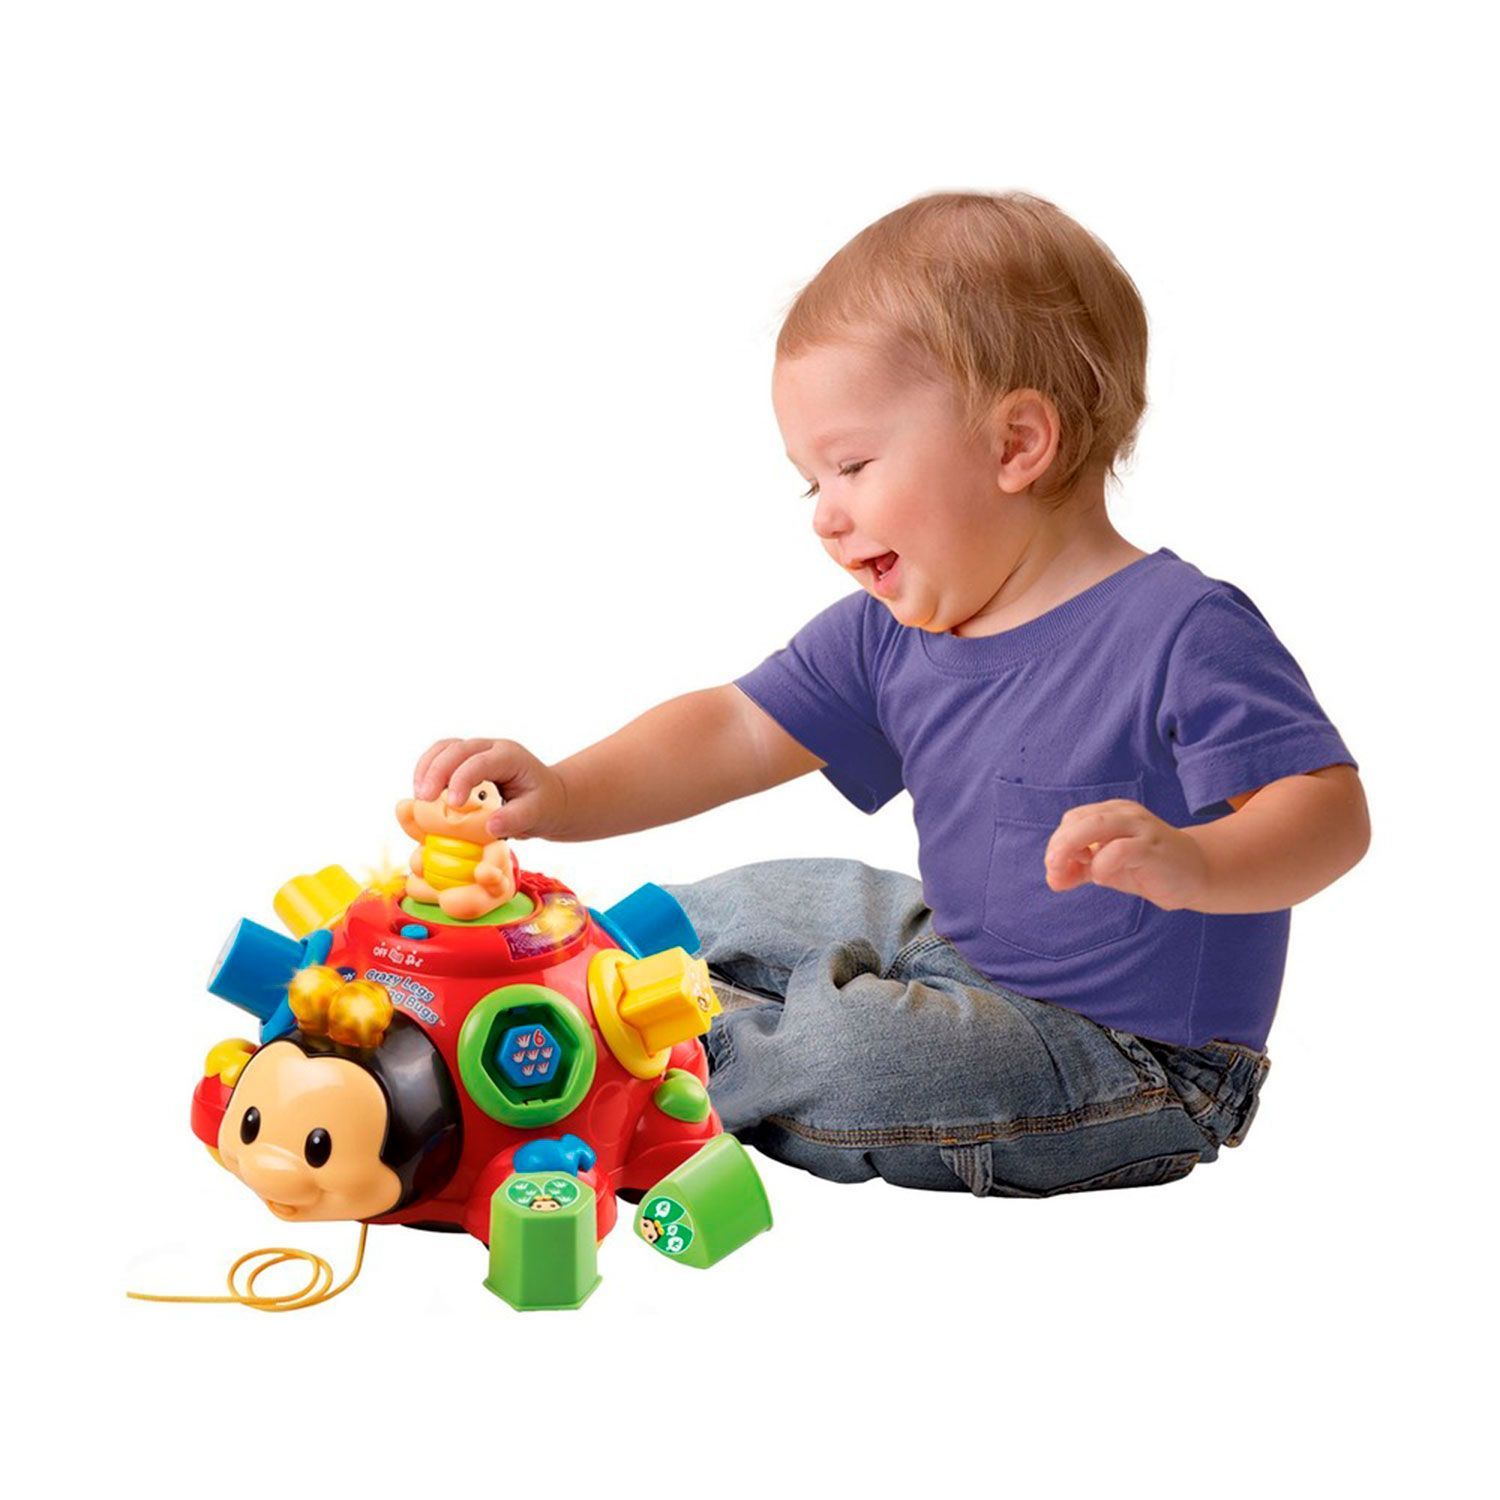 Игрушки детям три года. Vtech Божья коровка. Каталка-игрушка Vtech говорящий Жук (80-111226) со звуковыми эффектами. Detski igruski. Развивающиеся игрушки для детей.